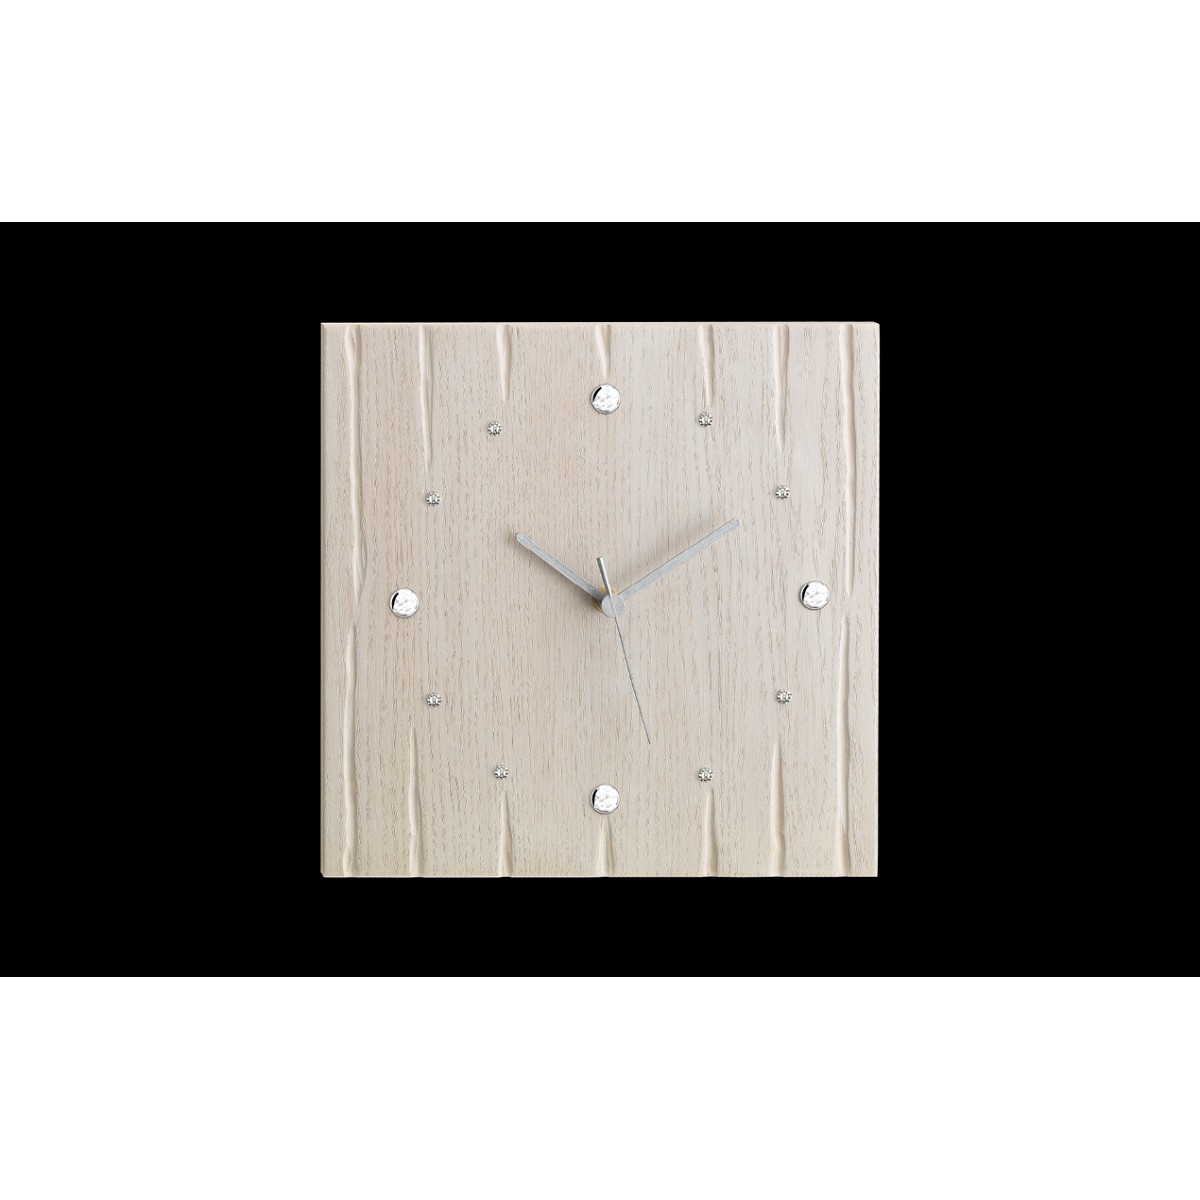 Ρολόι επίτοιχο σε ξύλο με χειροποίητη παλαίωση+Ασήμι+Swarovski